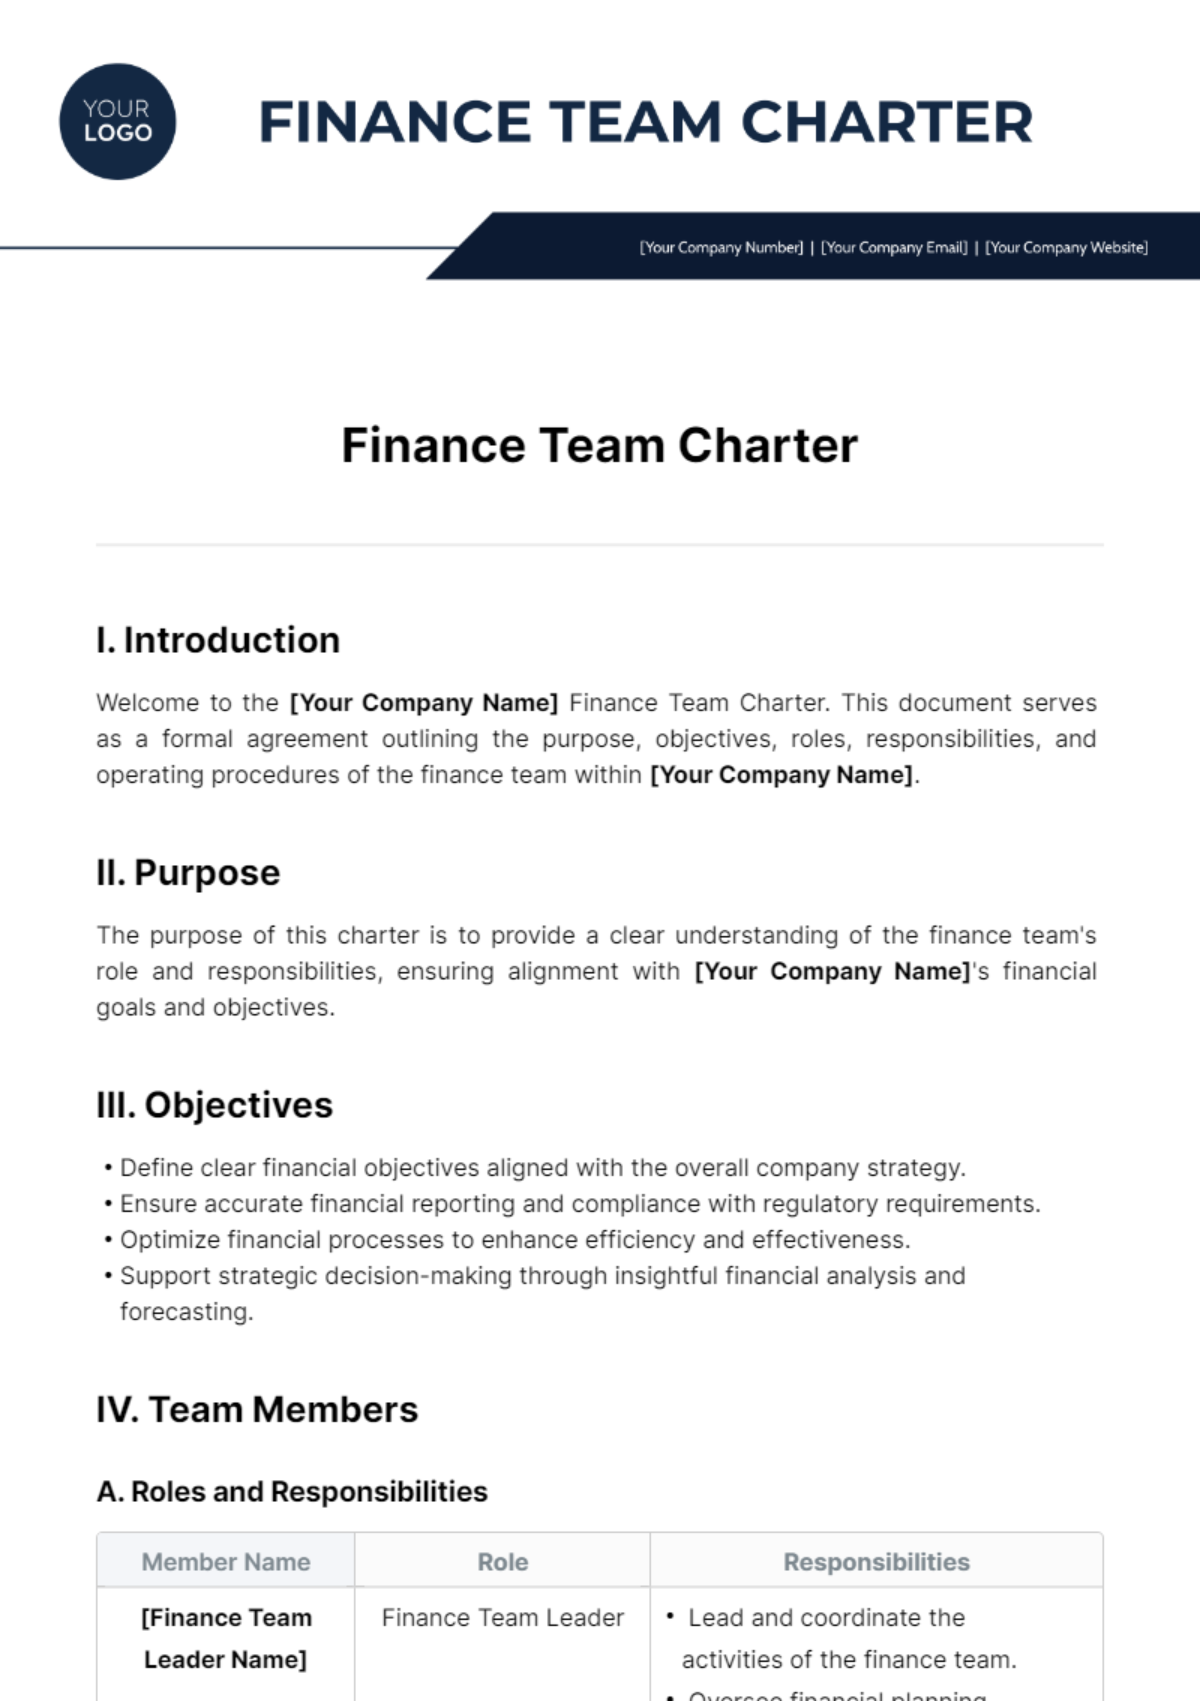 Finance Team Charter Template